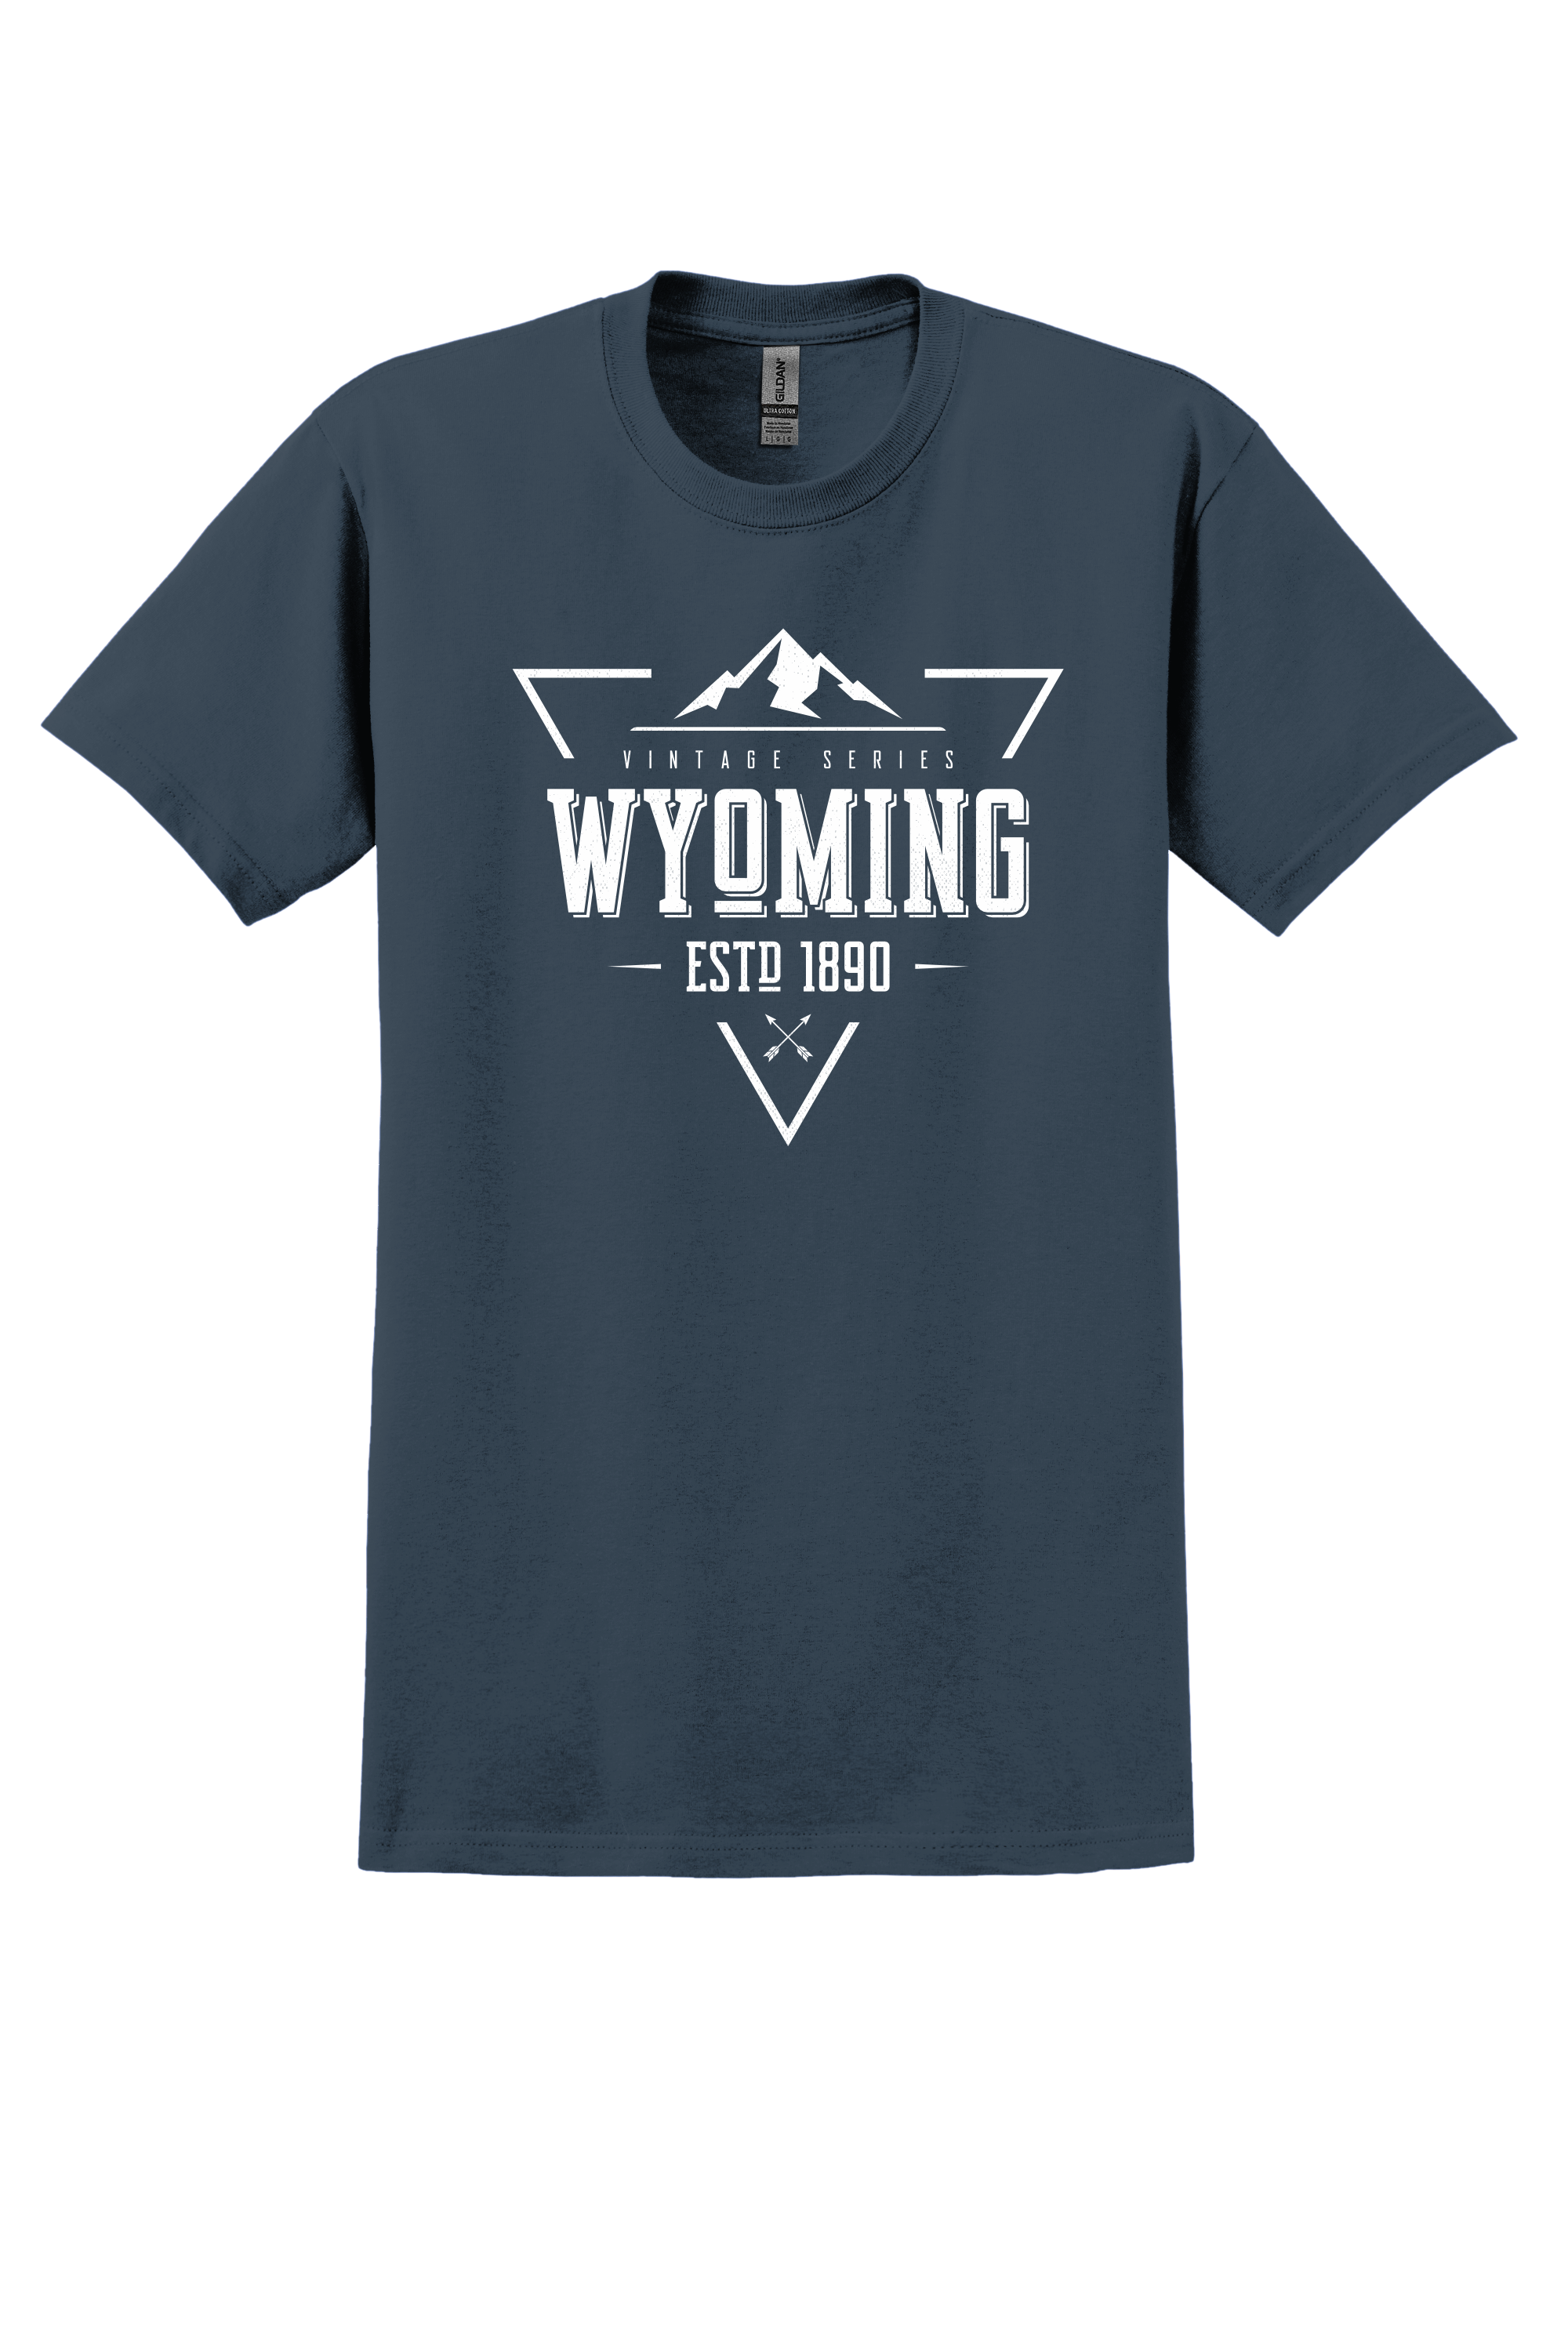 Wyoming Vintage Series 1890 Shirt